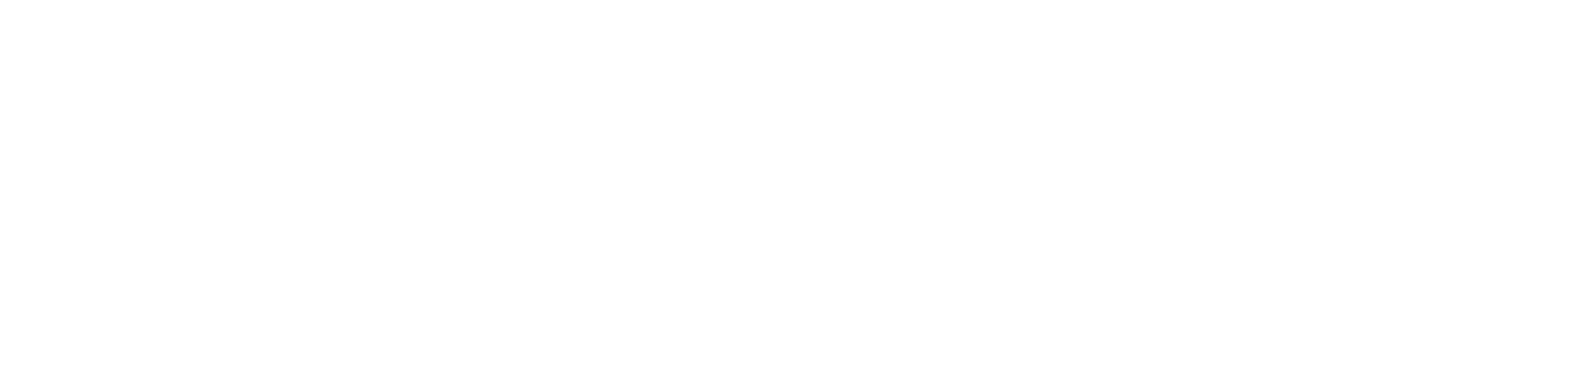 Clinique dentaire Julie Sylvain inc.